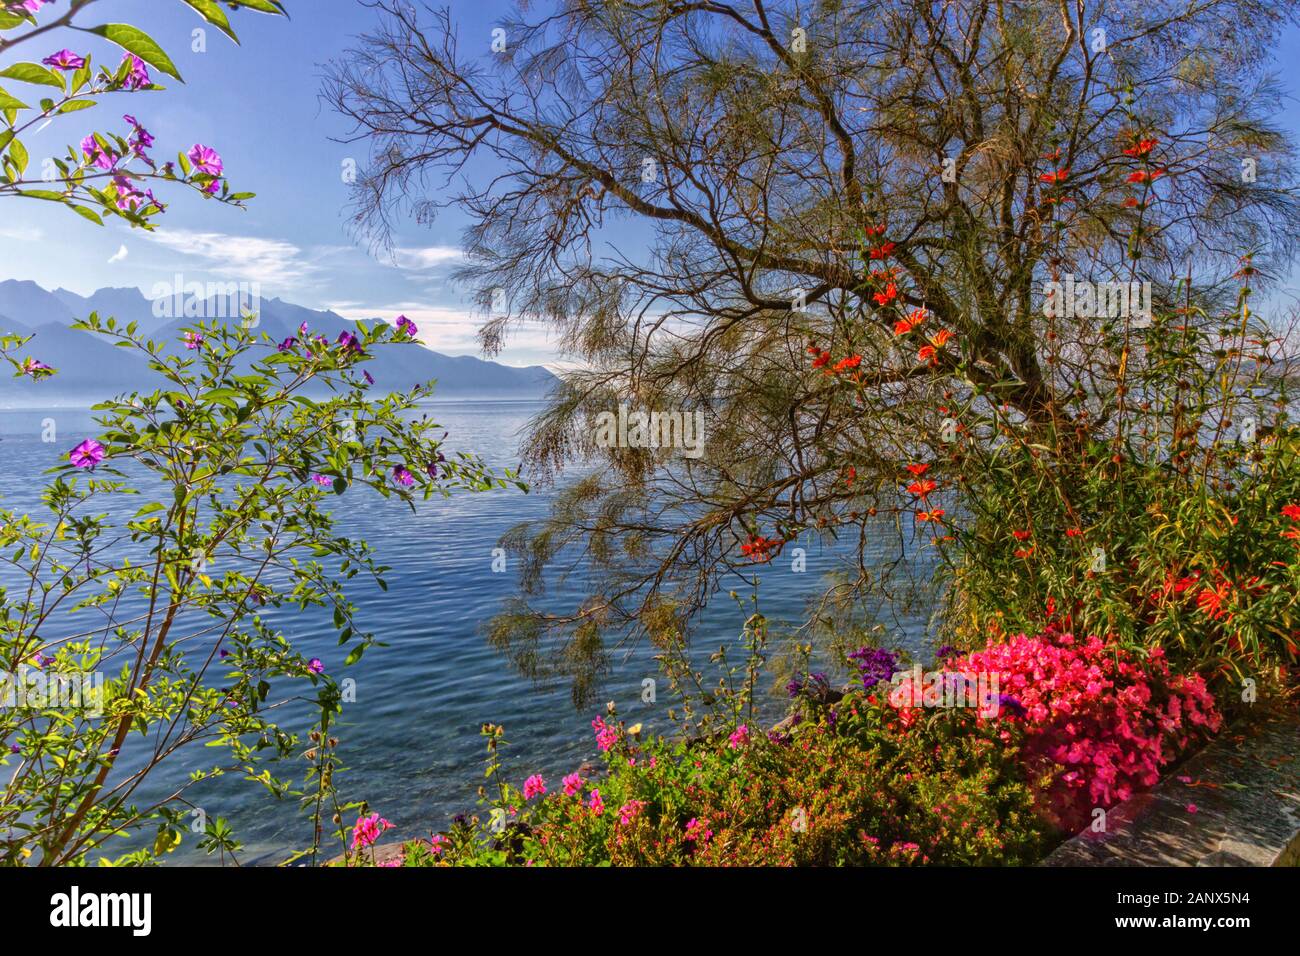 Pflanzen und Blumen neben Genf Genfer See in Montreux, Schweiz  Stockfotografie - Alamy